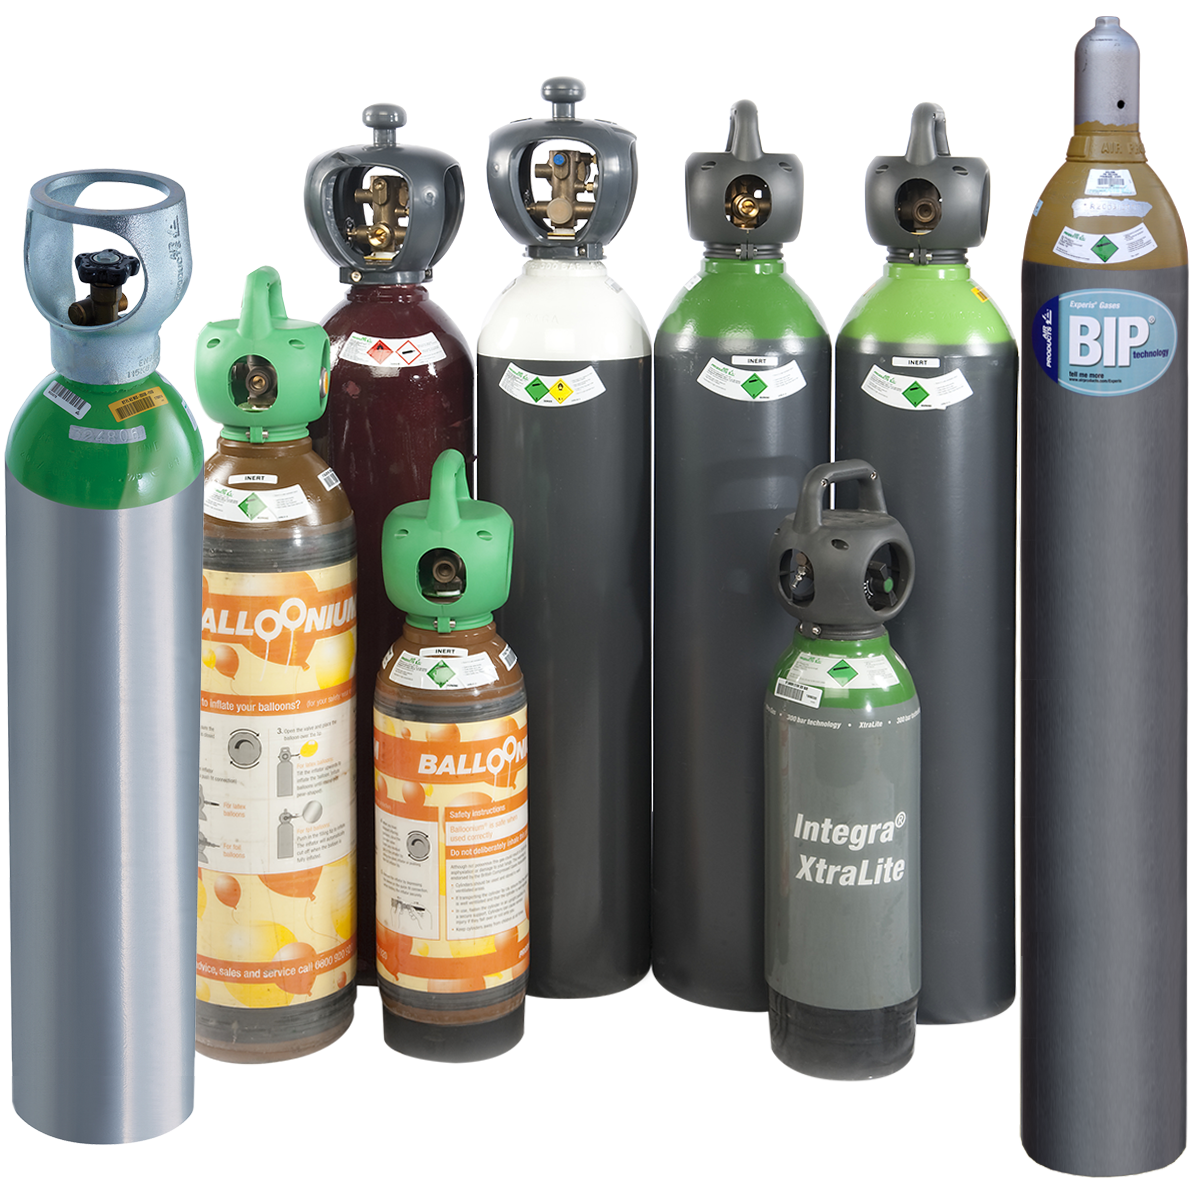 MDG - Recharge bouteille gaz 15 kg CO2 liquide - pour machine a fumée MDG -  Consigne en supplément (Neuf) - JSFrance